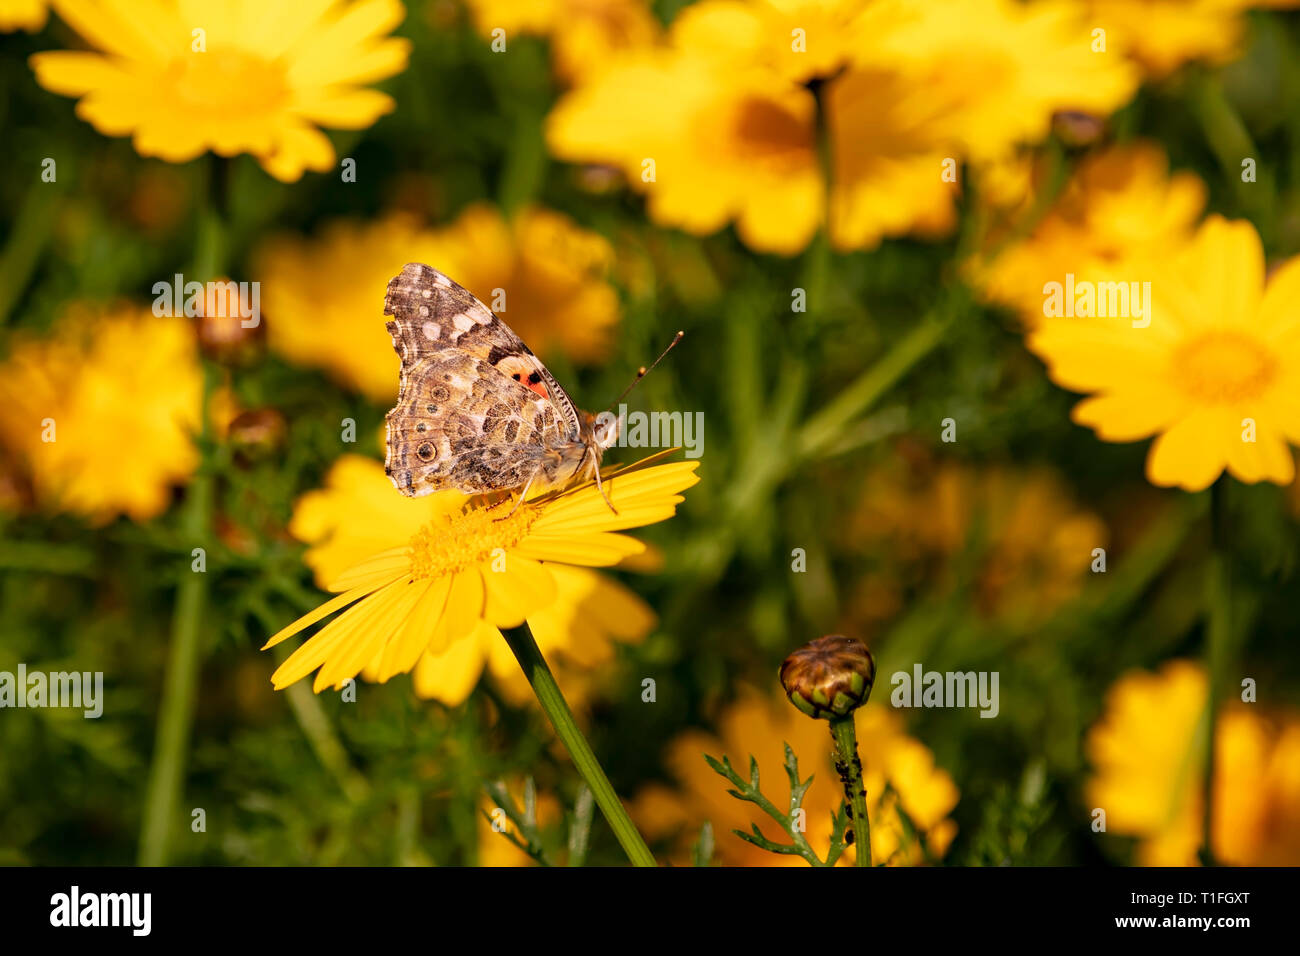 Schmetterling Vanessa cardui auf eine Blume von einem gelben wilde Chrysantheme in der Sonne beleuchtete während der Migration von Afrika nach Europa sitzen durch Israel Stockfoto